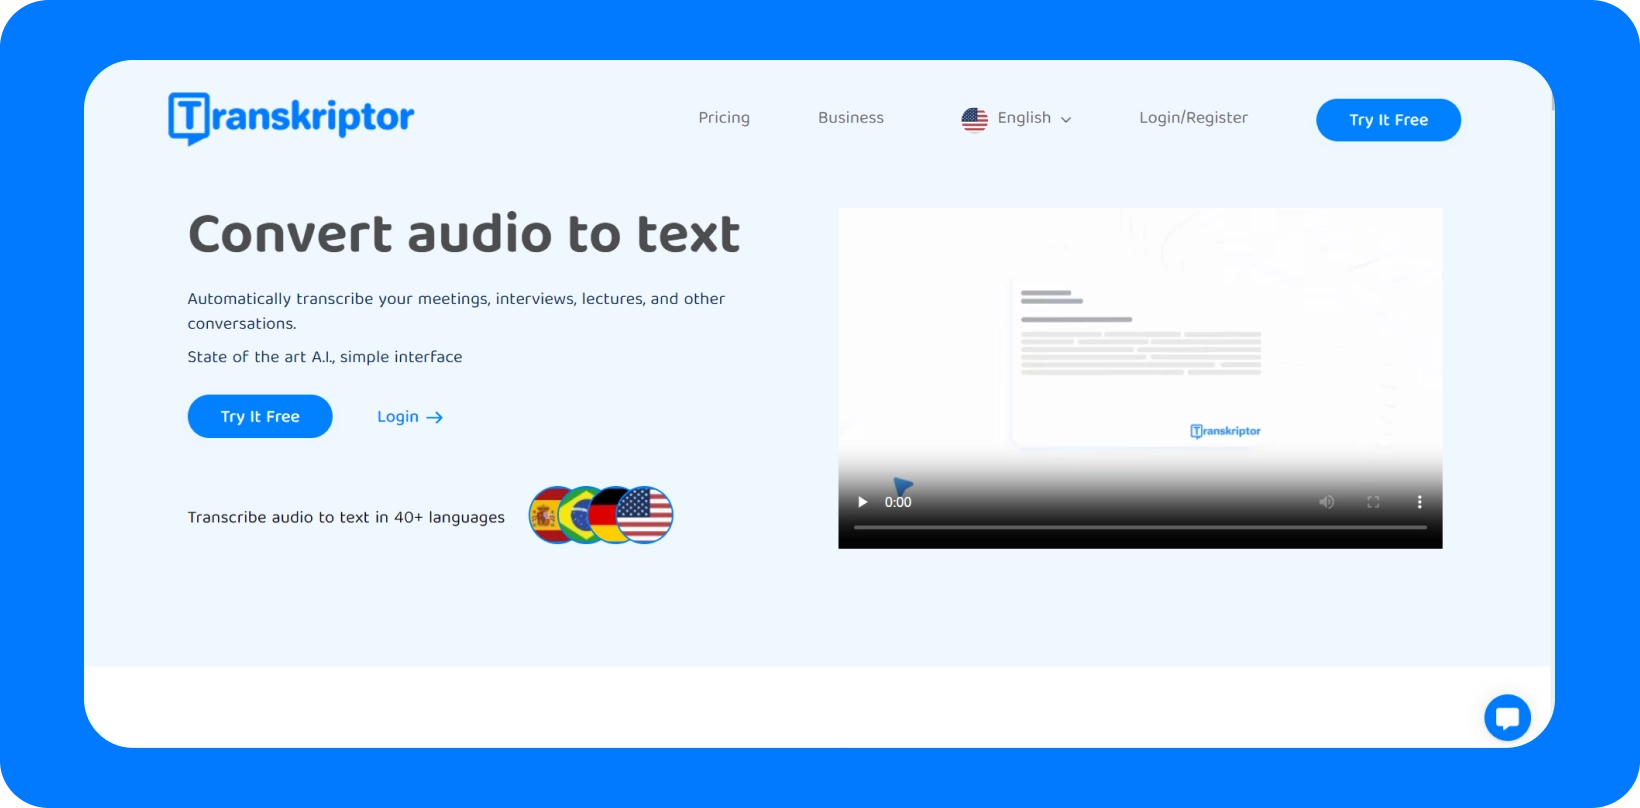 Transkriptor interface met de service 'Converteer audio naar tekst' met meertalige ondersteuning.